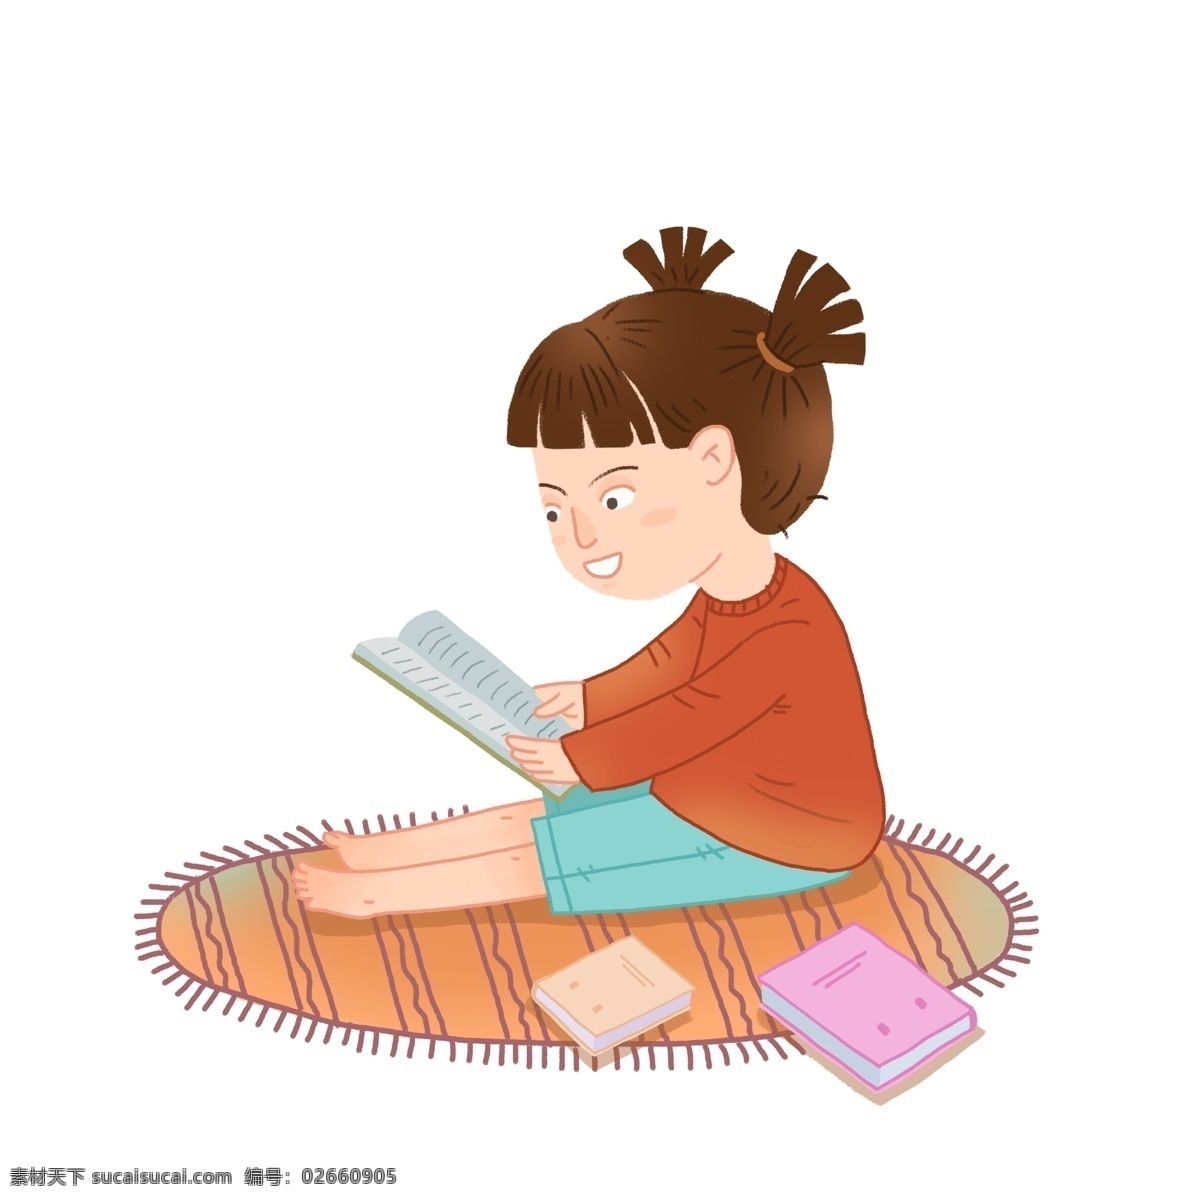 小女孩 看书 开学季 读书日 阅读 女孩 地毯 书籍 快乐学习 电商用途 手机用图 微 信 公众 号 图